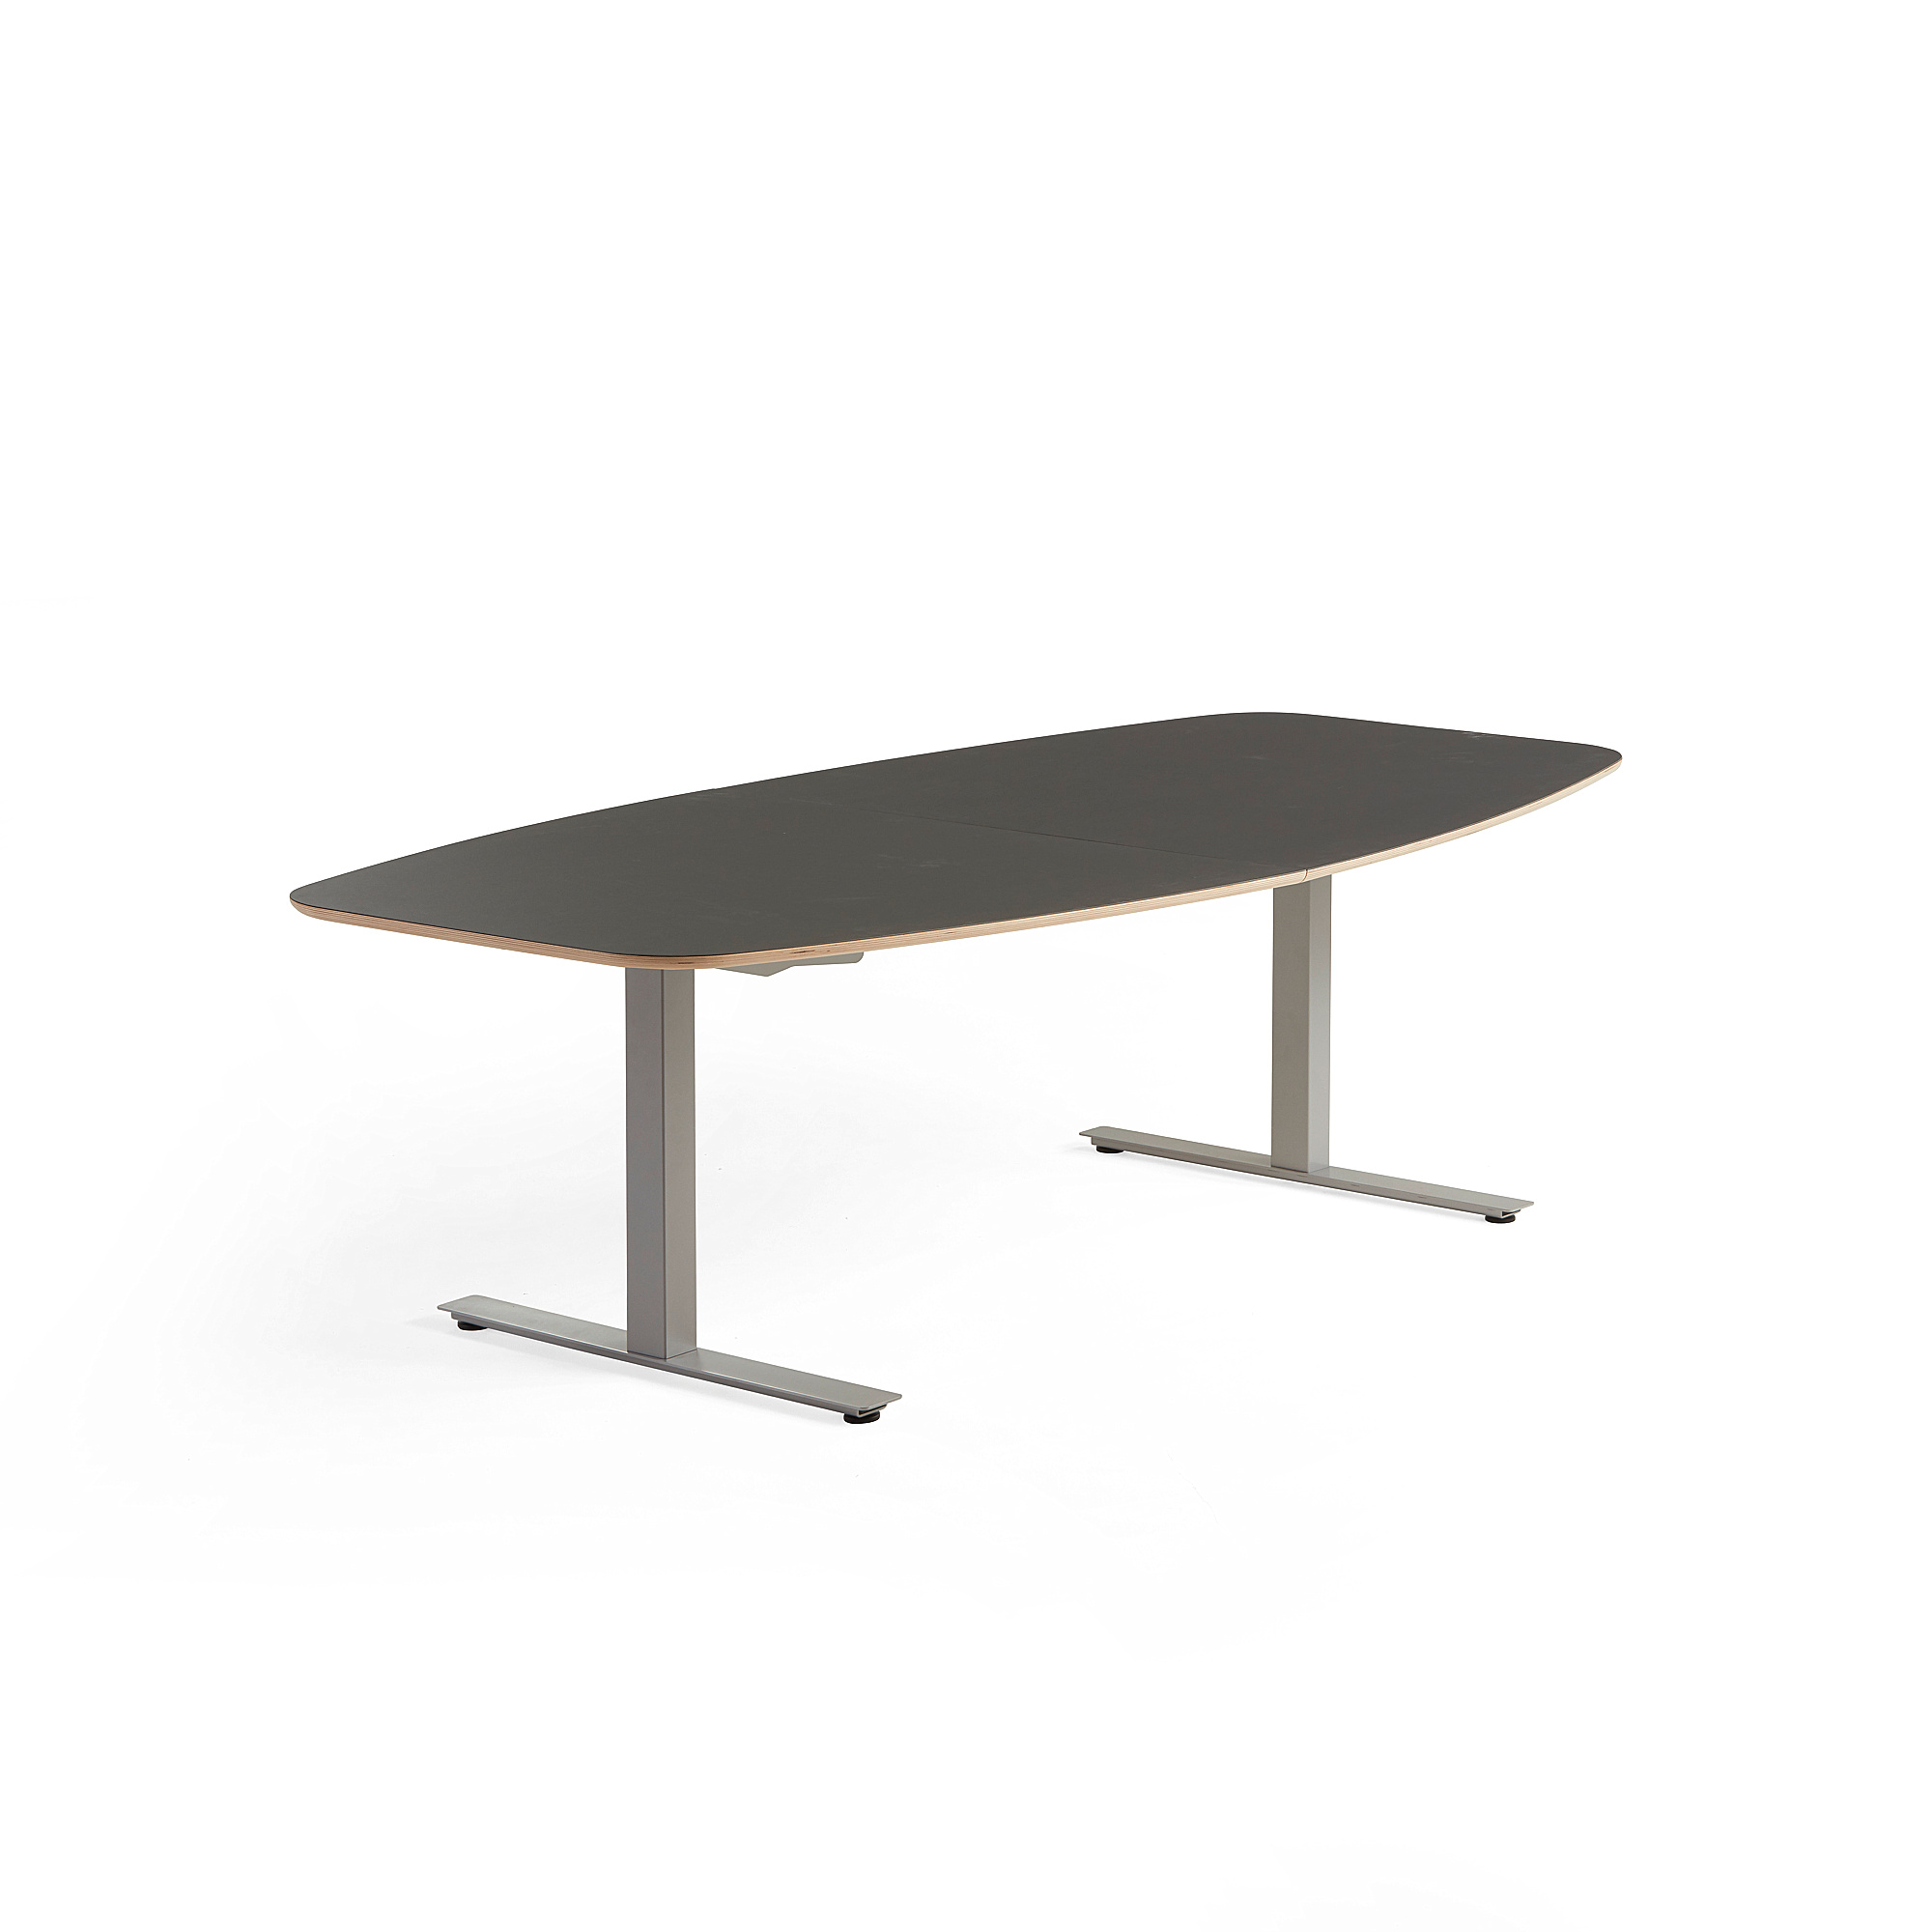 Rokovací stôl AUDREY, 2400x1200 mm, strieborný podstavec, tmavošedá doska